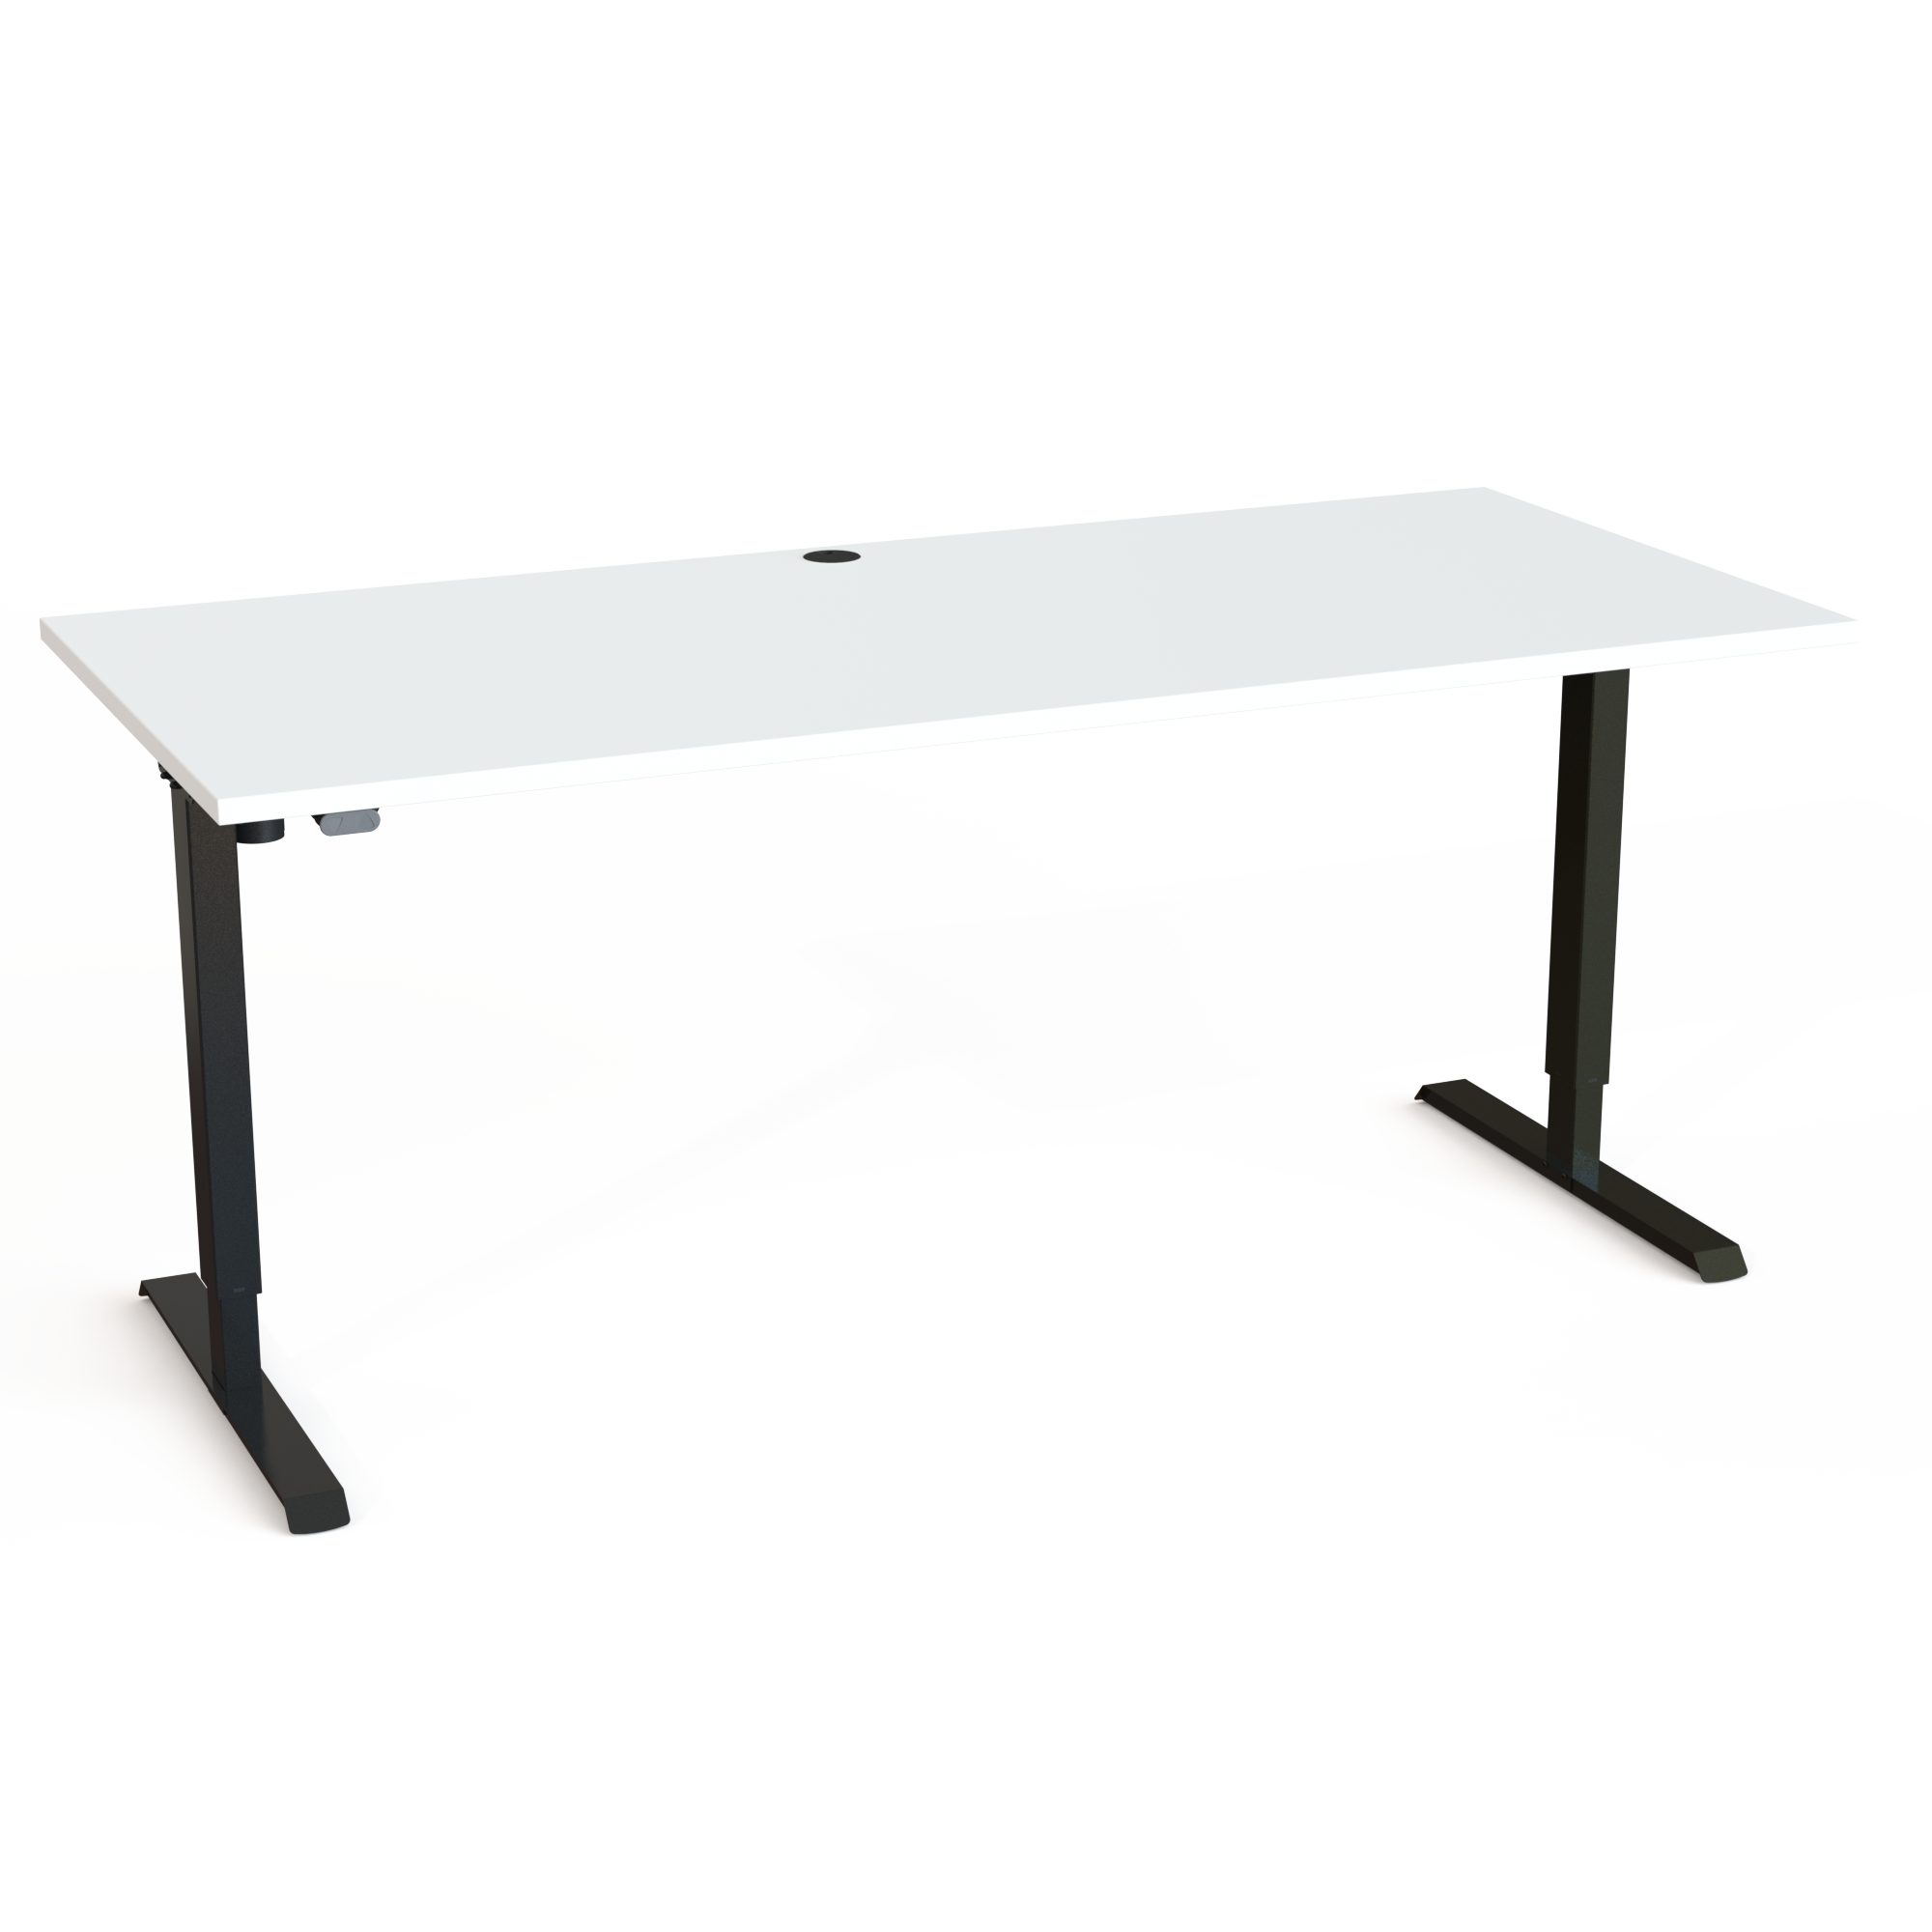 Schreibtisch steh/sitz | 180x80 cm | Weiß mit schwarzem Gestell